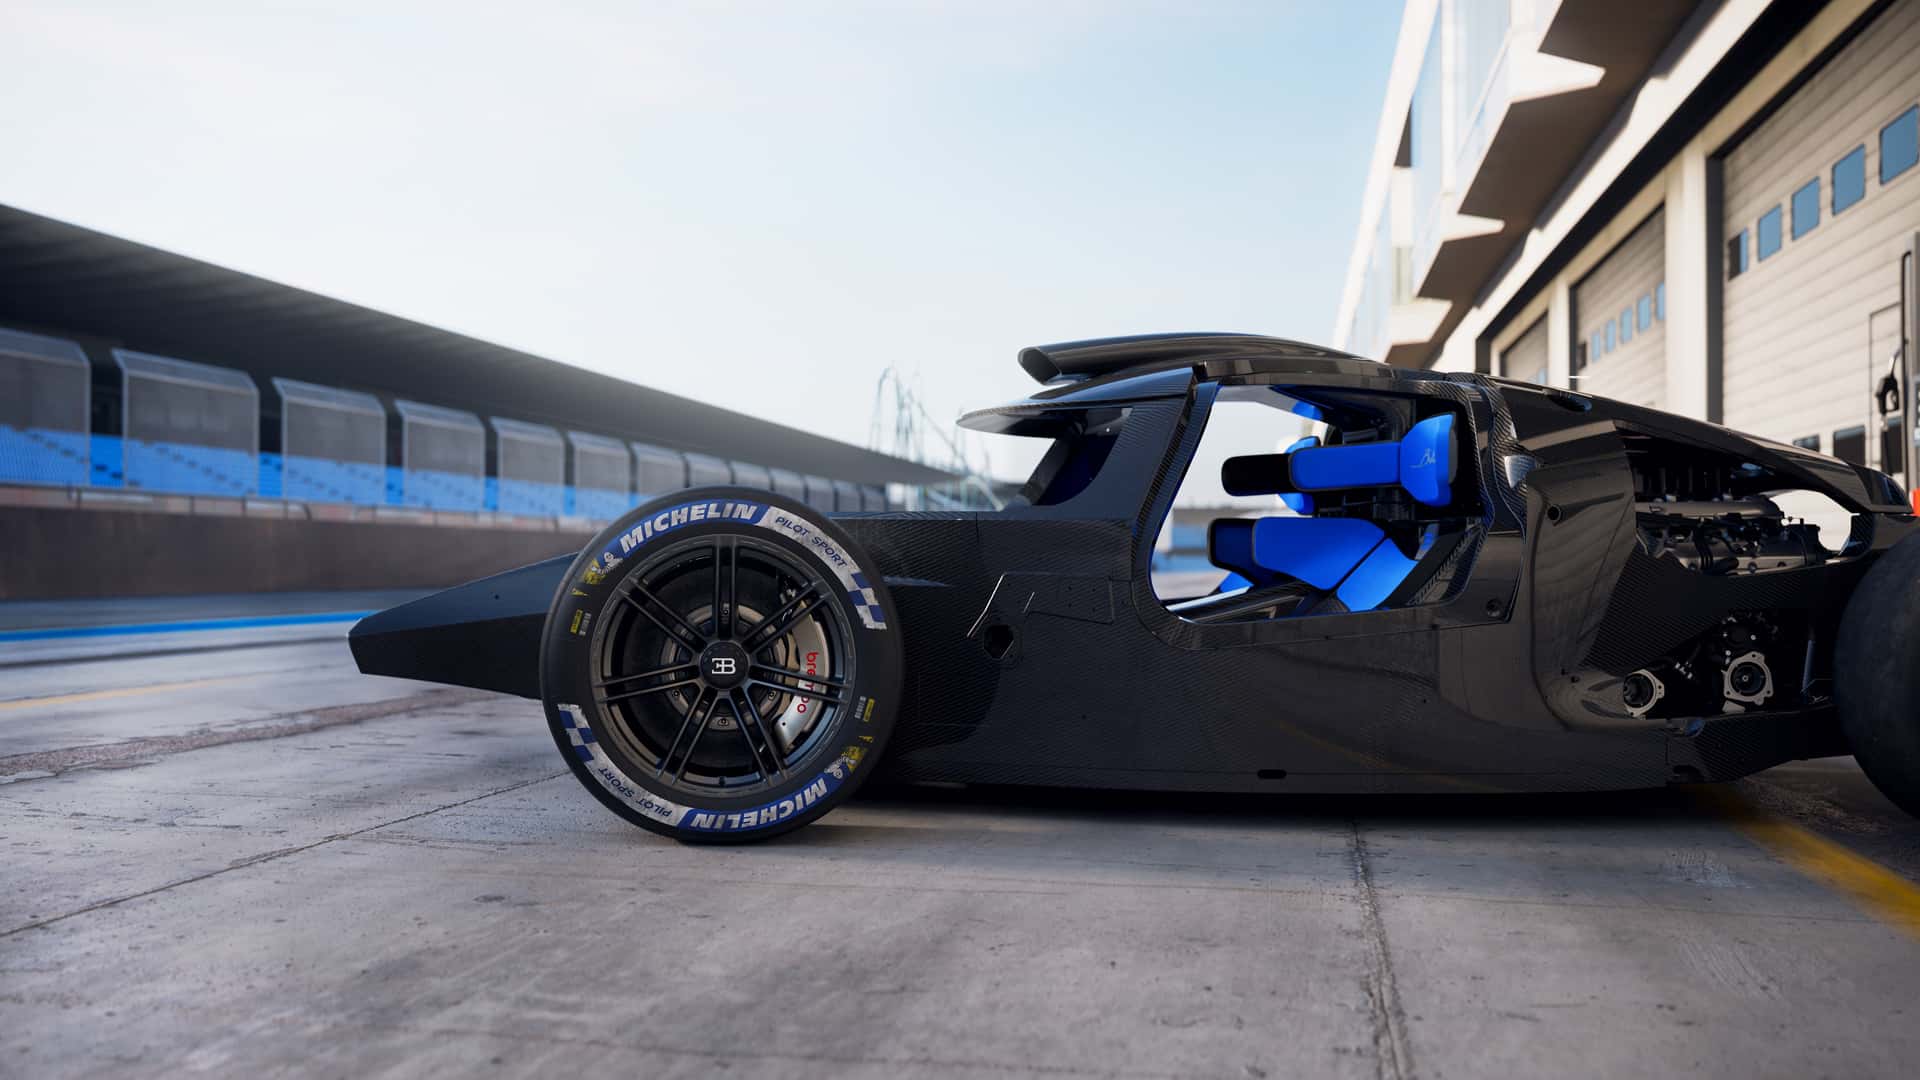 Đến bộ xương bên dưới lớp áo siêu xe Bugatti 4,3 triệu USD cũng vô cùng ấn tượng - Ảnh 3.